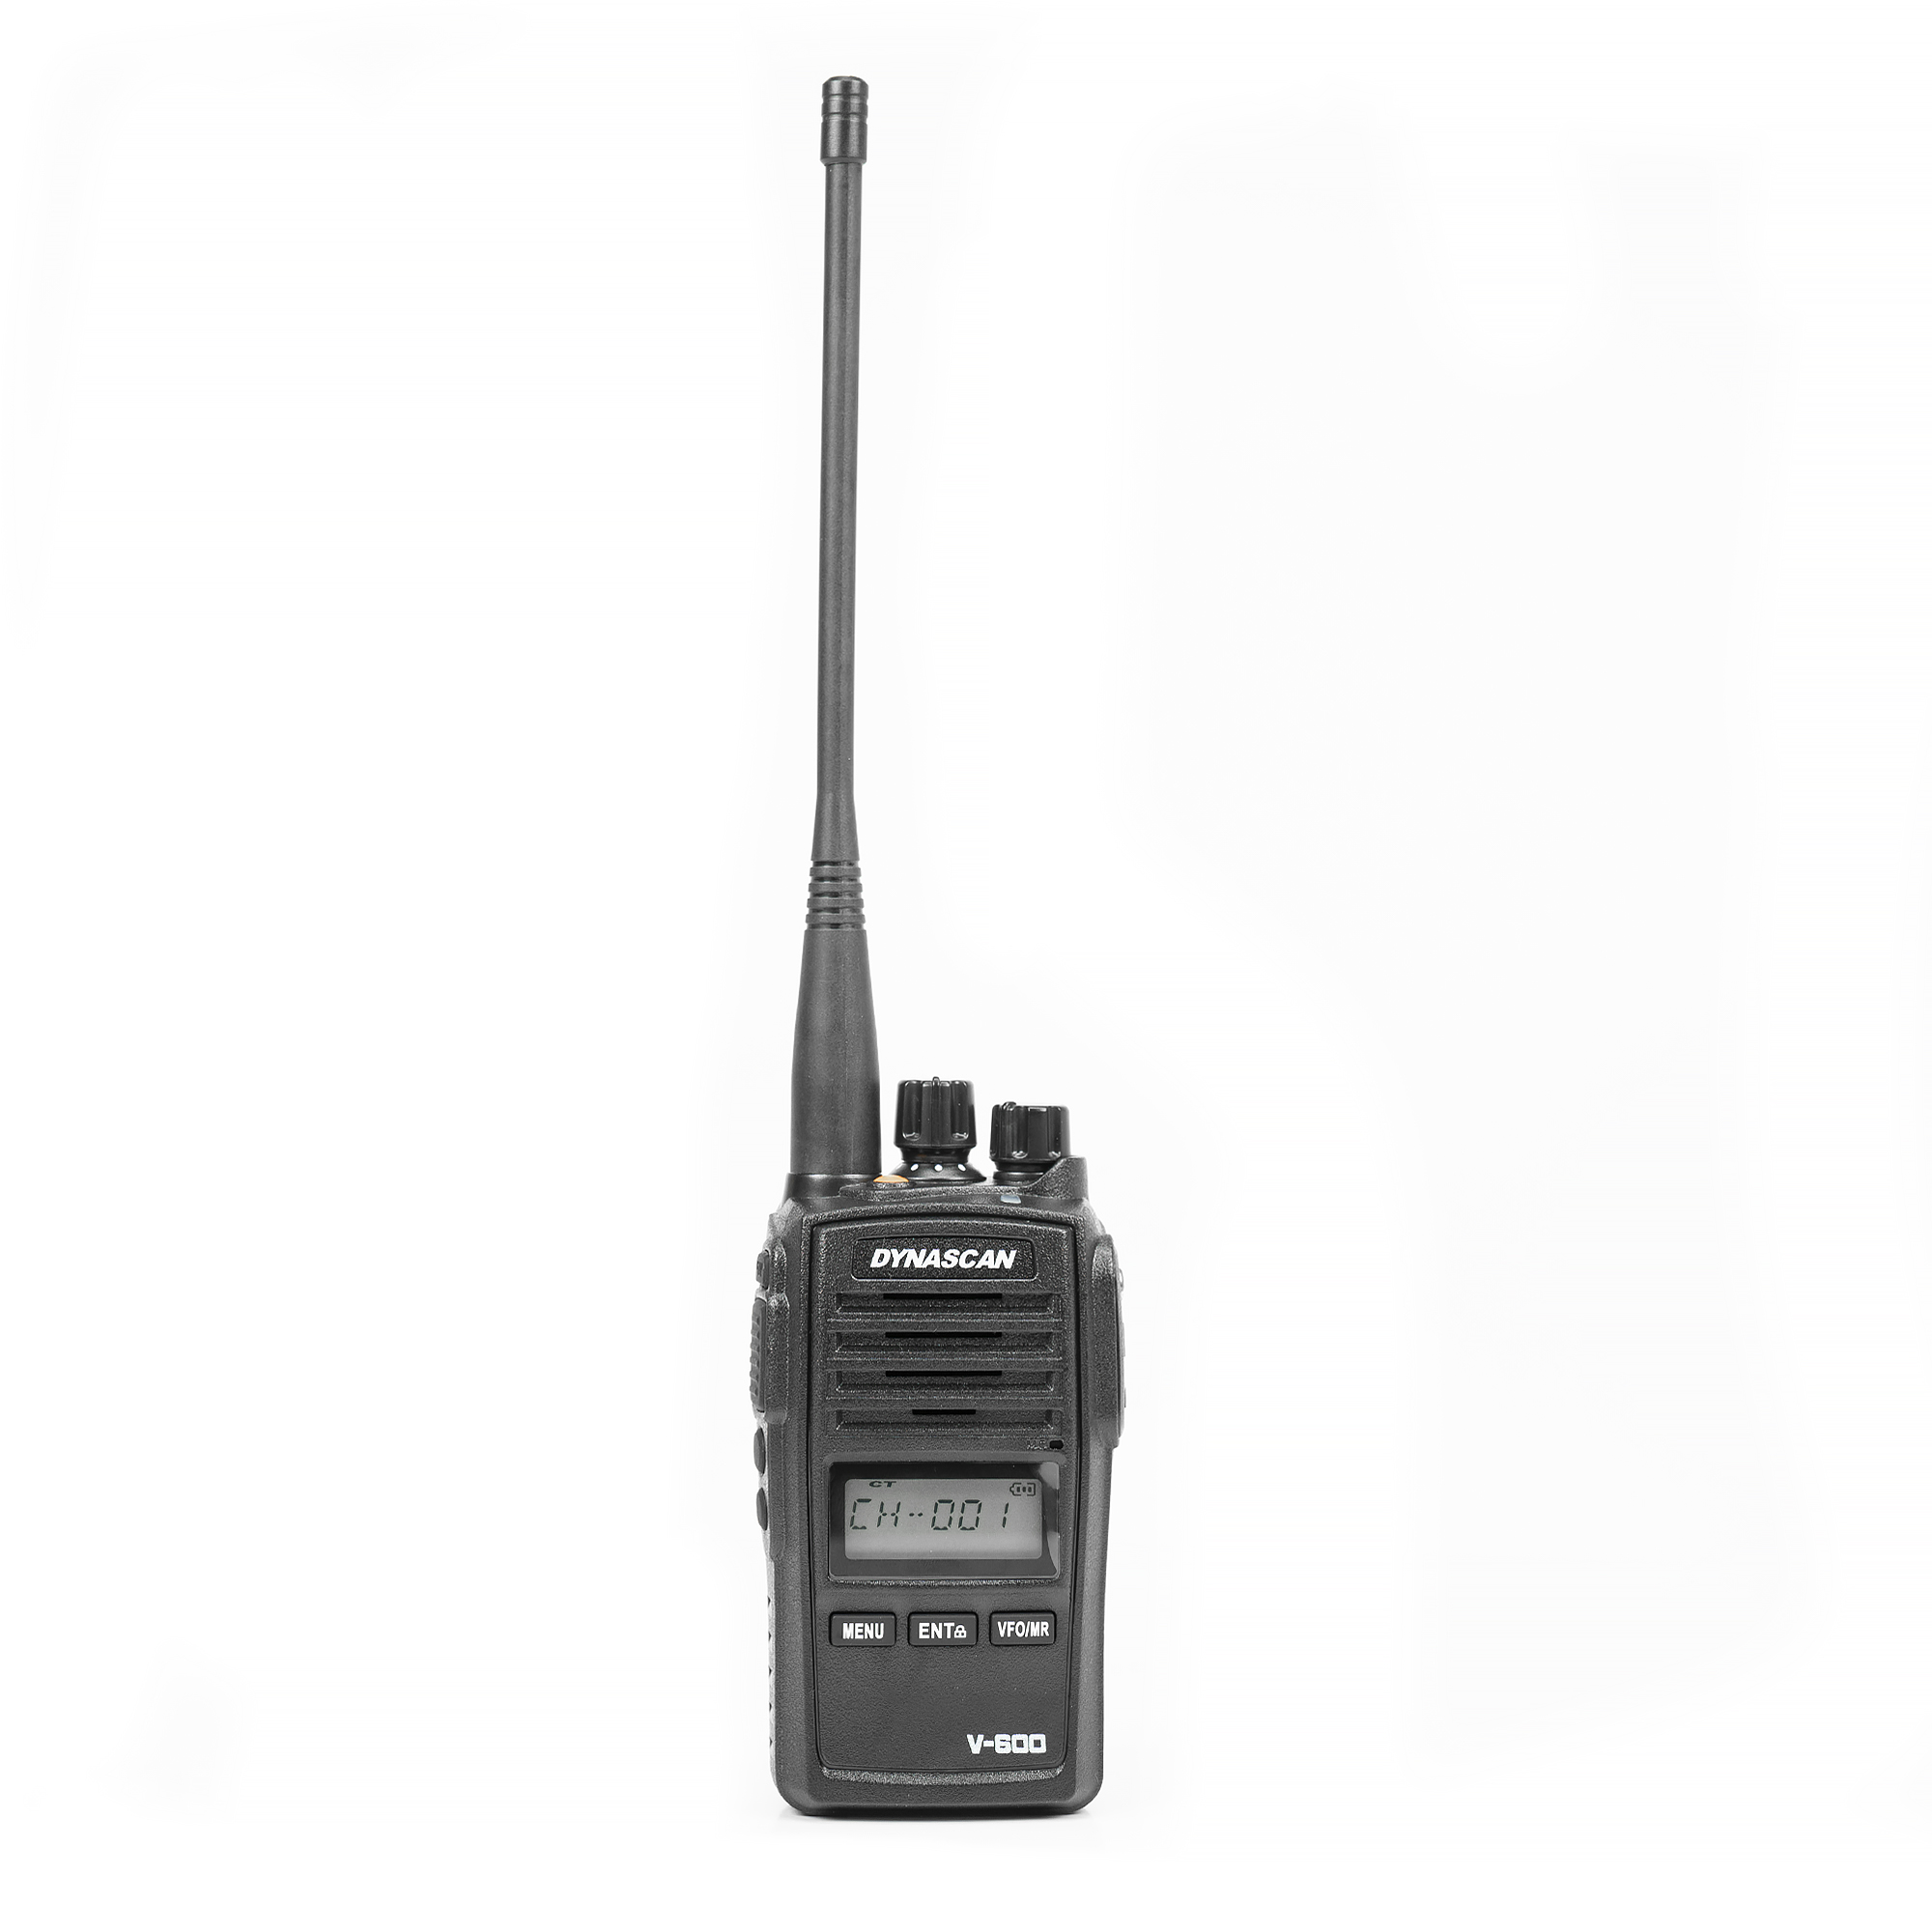 Statie radio portabila VHF PNI Dynascan V-600, 136-174 MHz, IP67, Scan, Scrambler, VOX image6